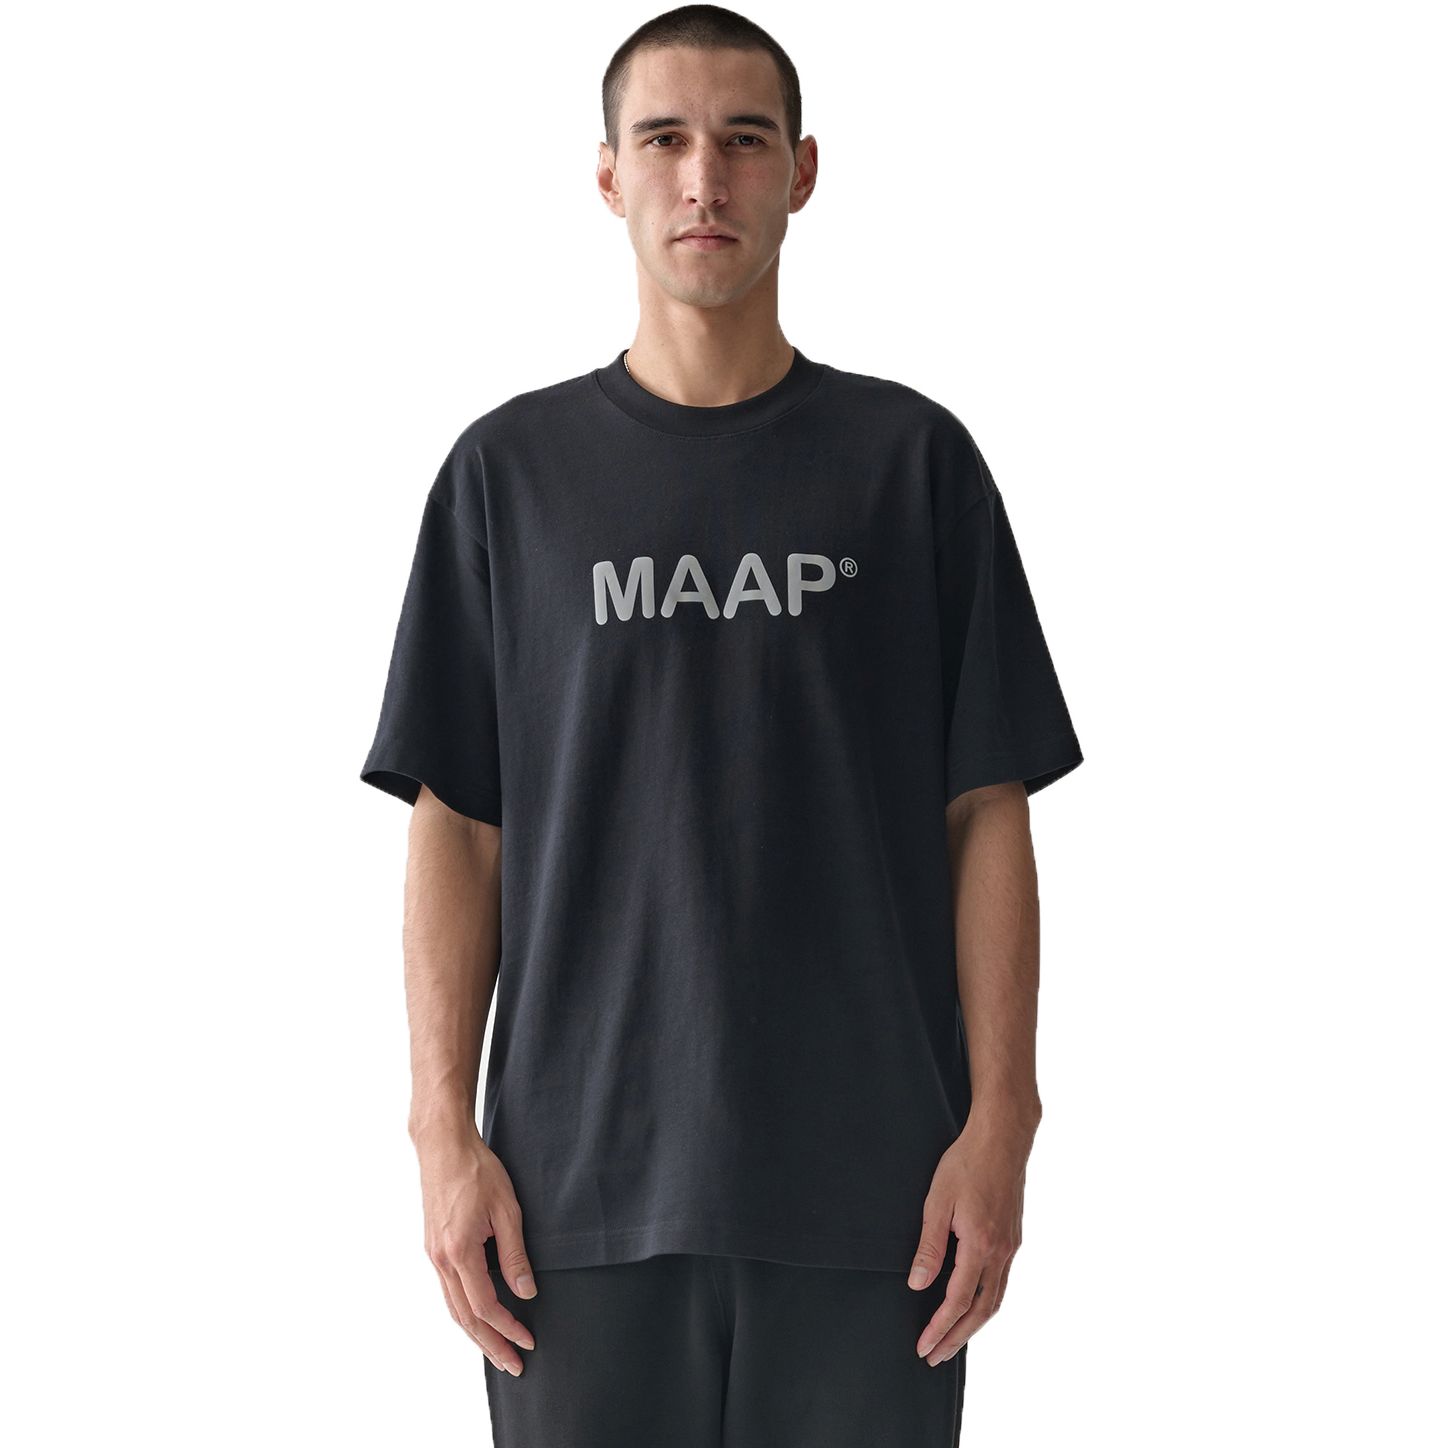 Produktbild von MAAP Essentials Text T-Shirt Herren - schwarz